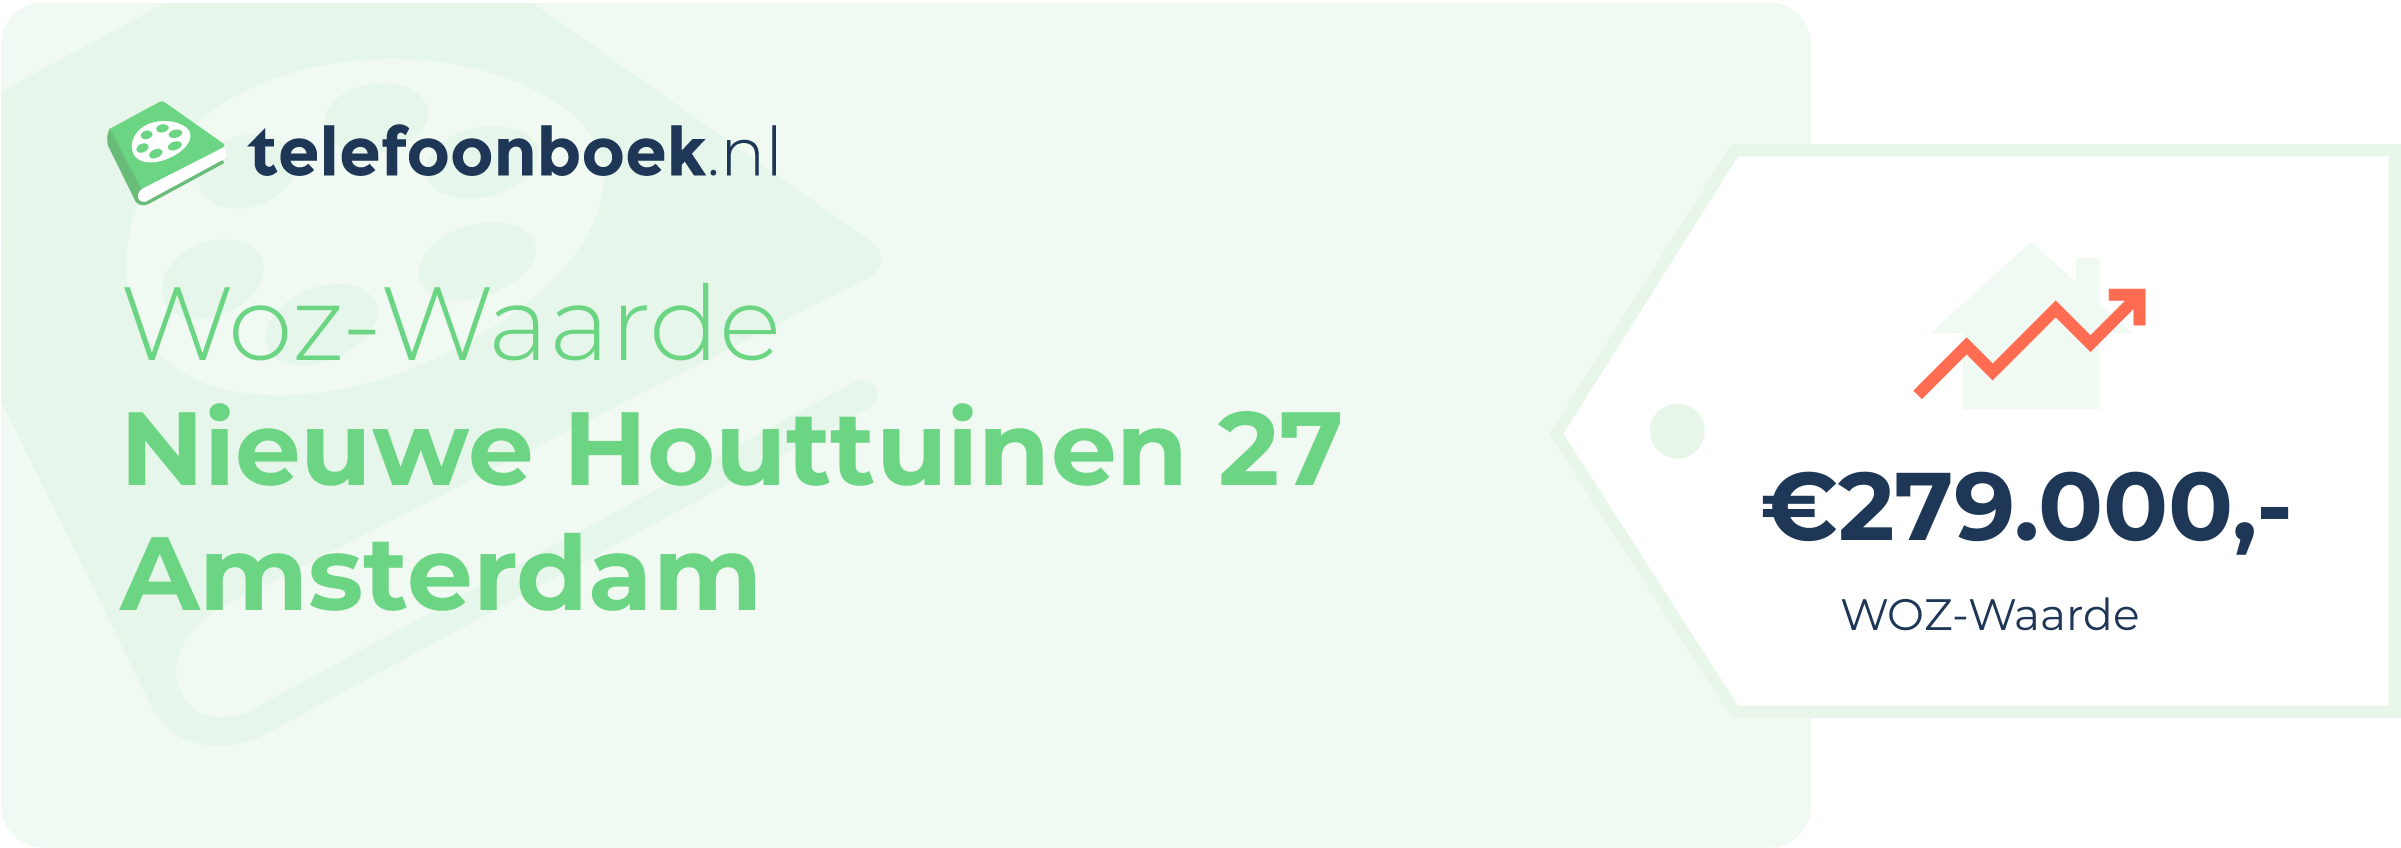 WOZ-waarde Nieuwe Houttuinen 27 Amsterdam